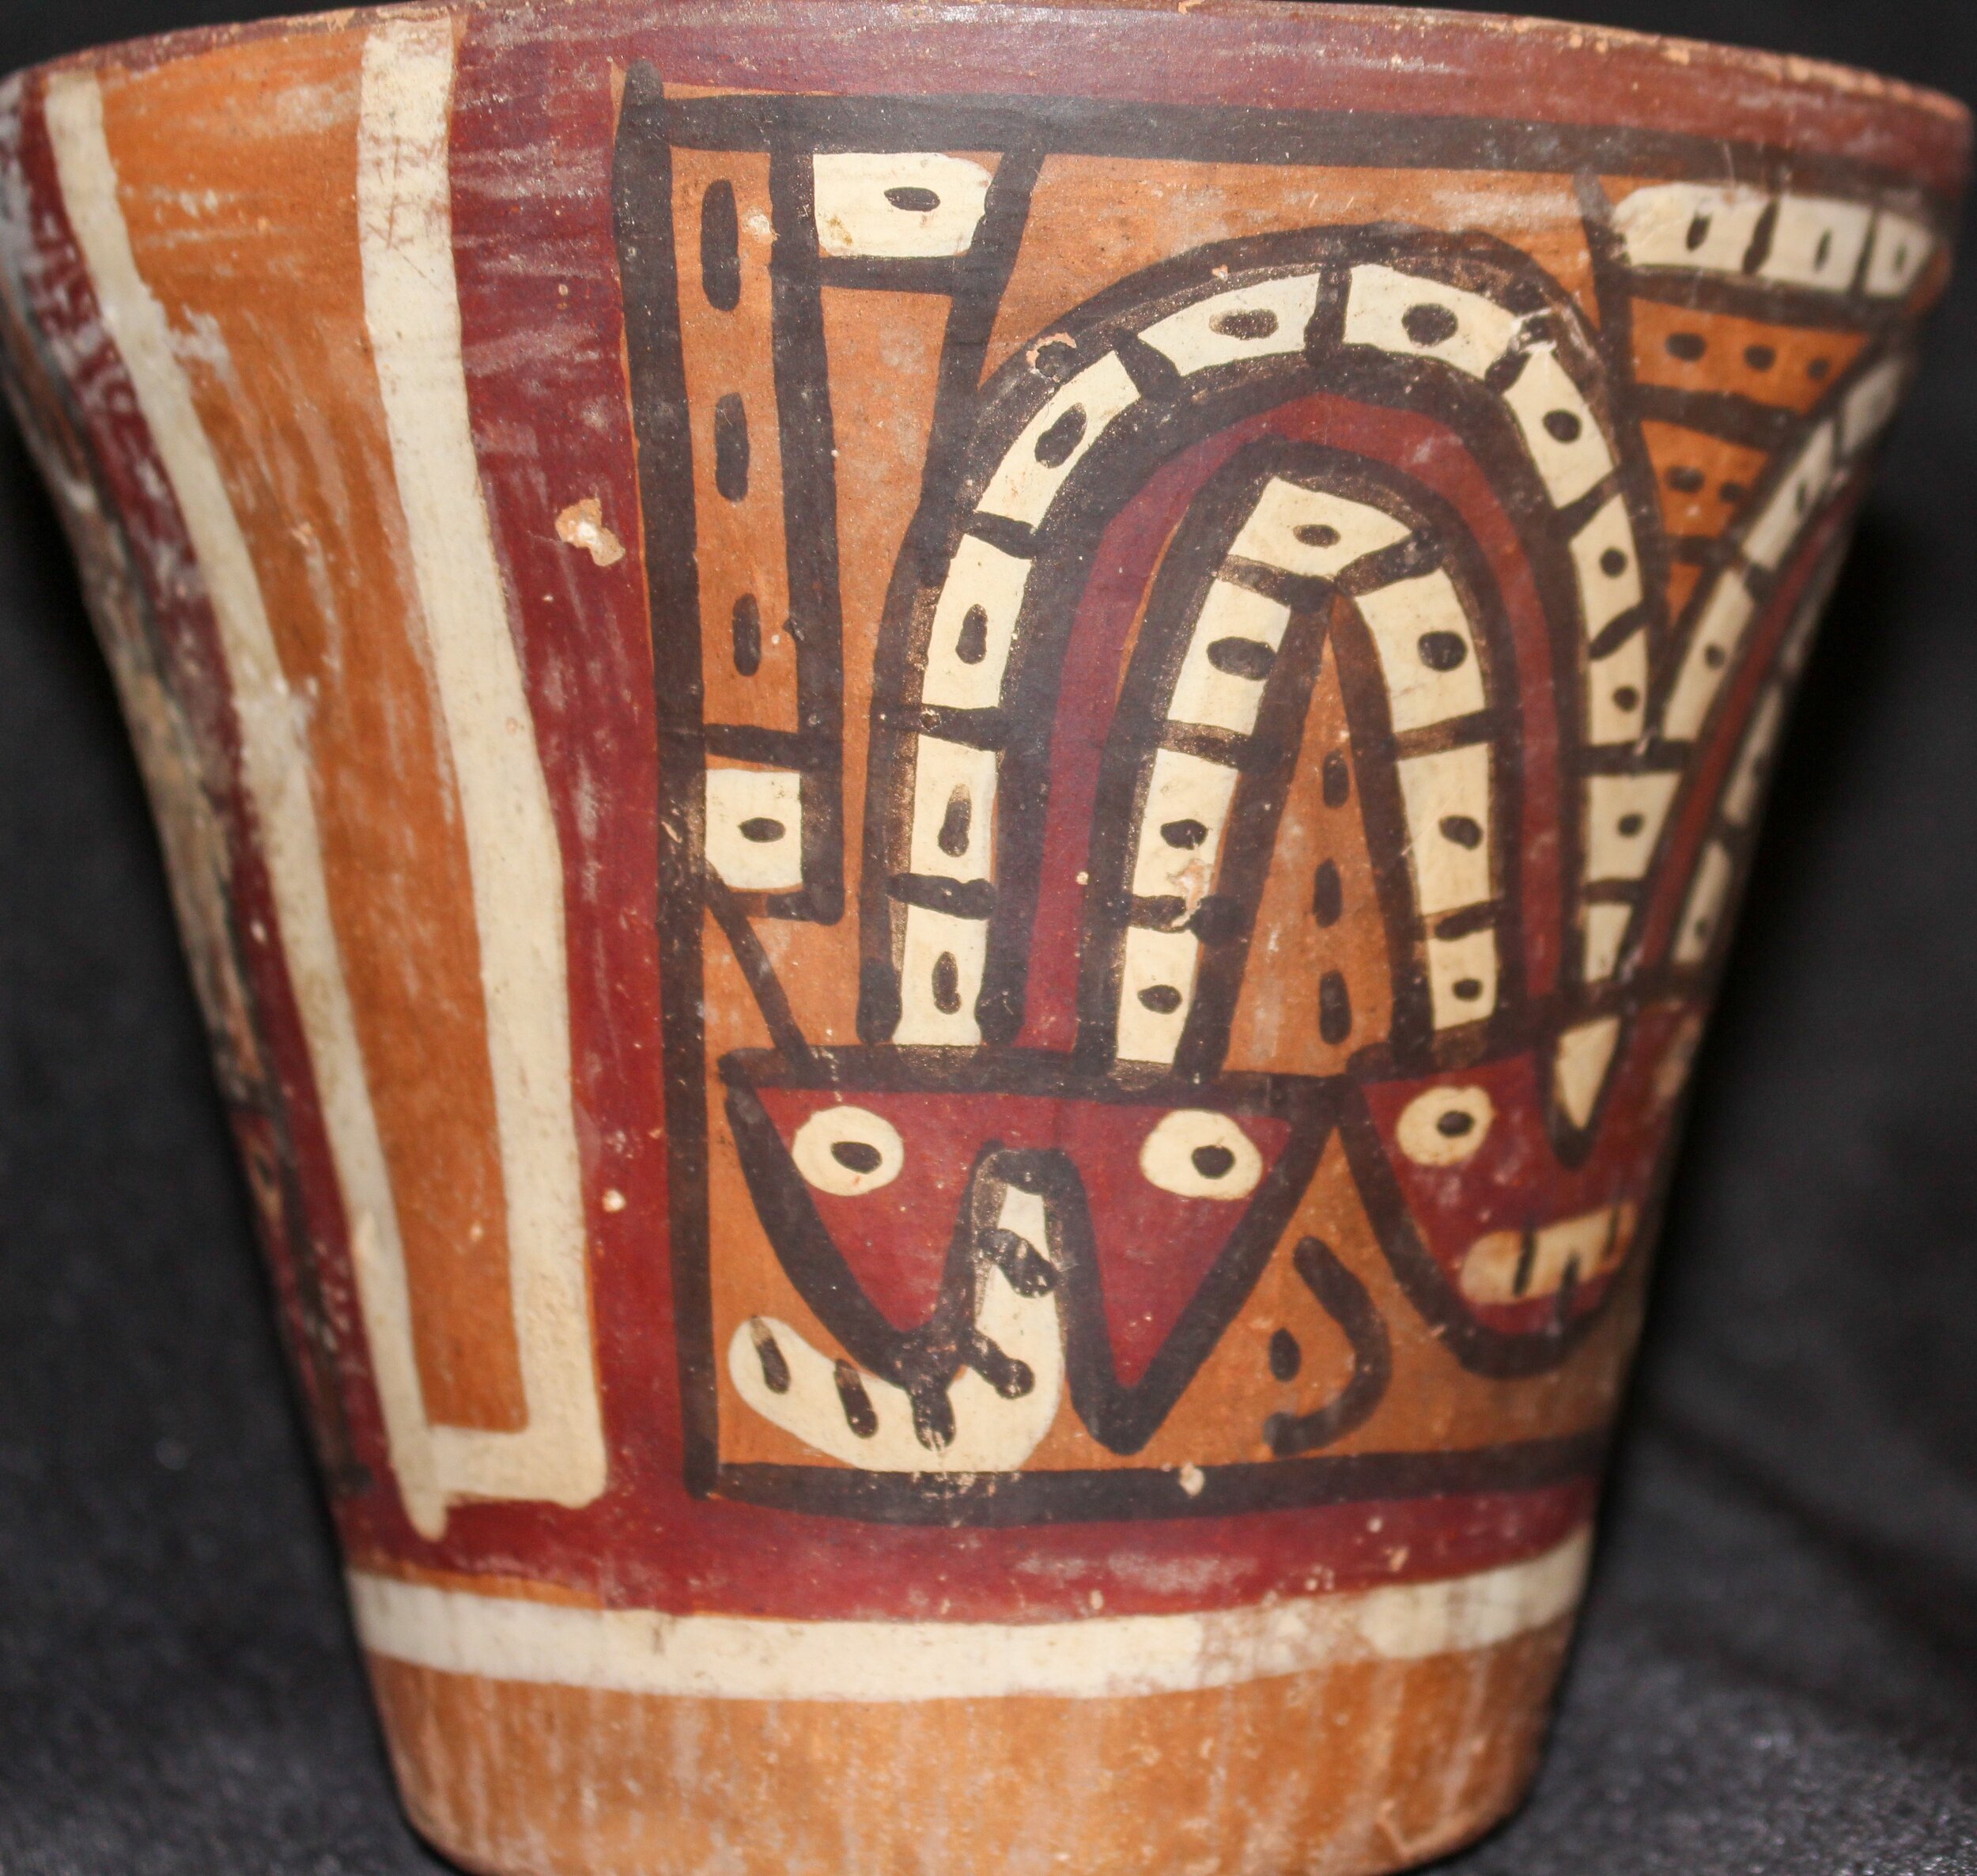 Nasca Vase, ca. A.D. 100 - A.D. 800, Peru